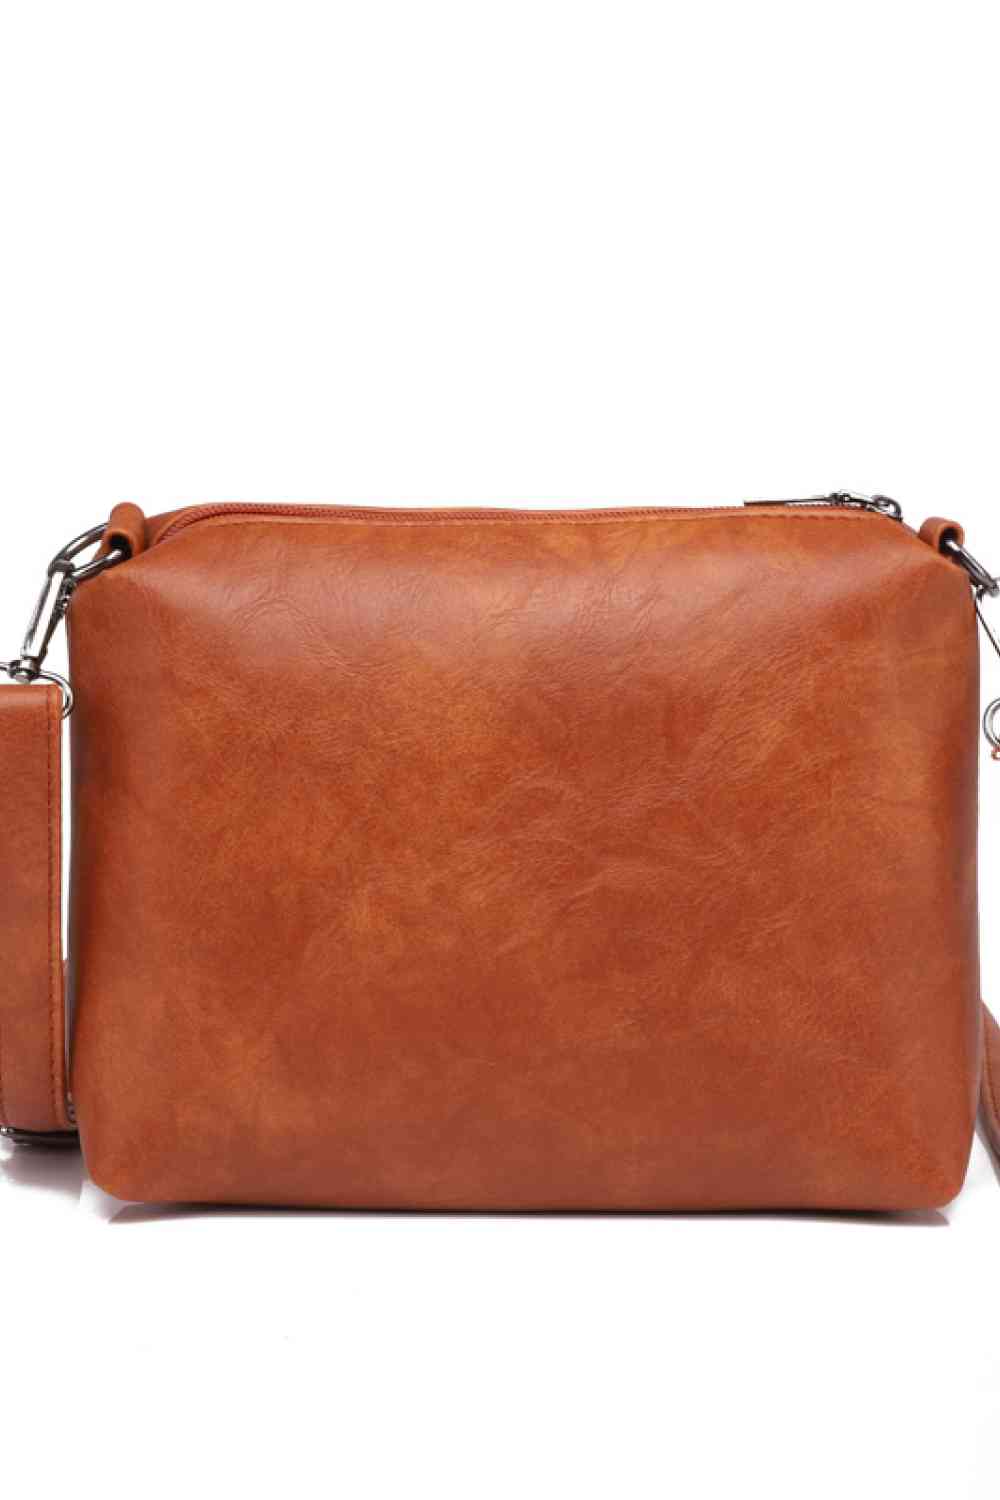 PU Leather Bag Set - BloomBliss.com